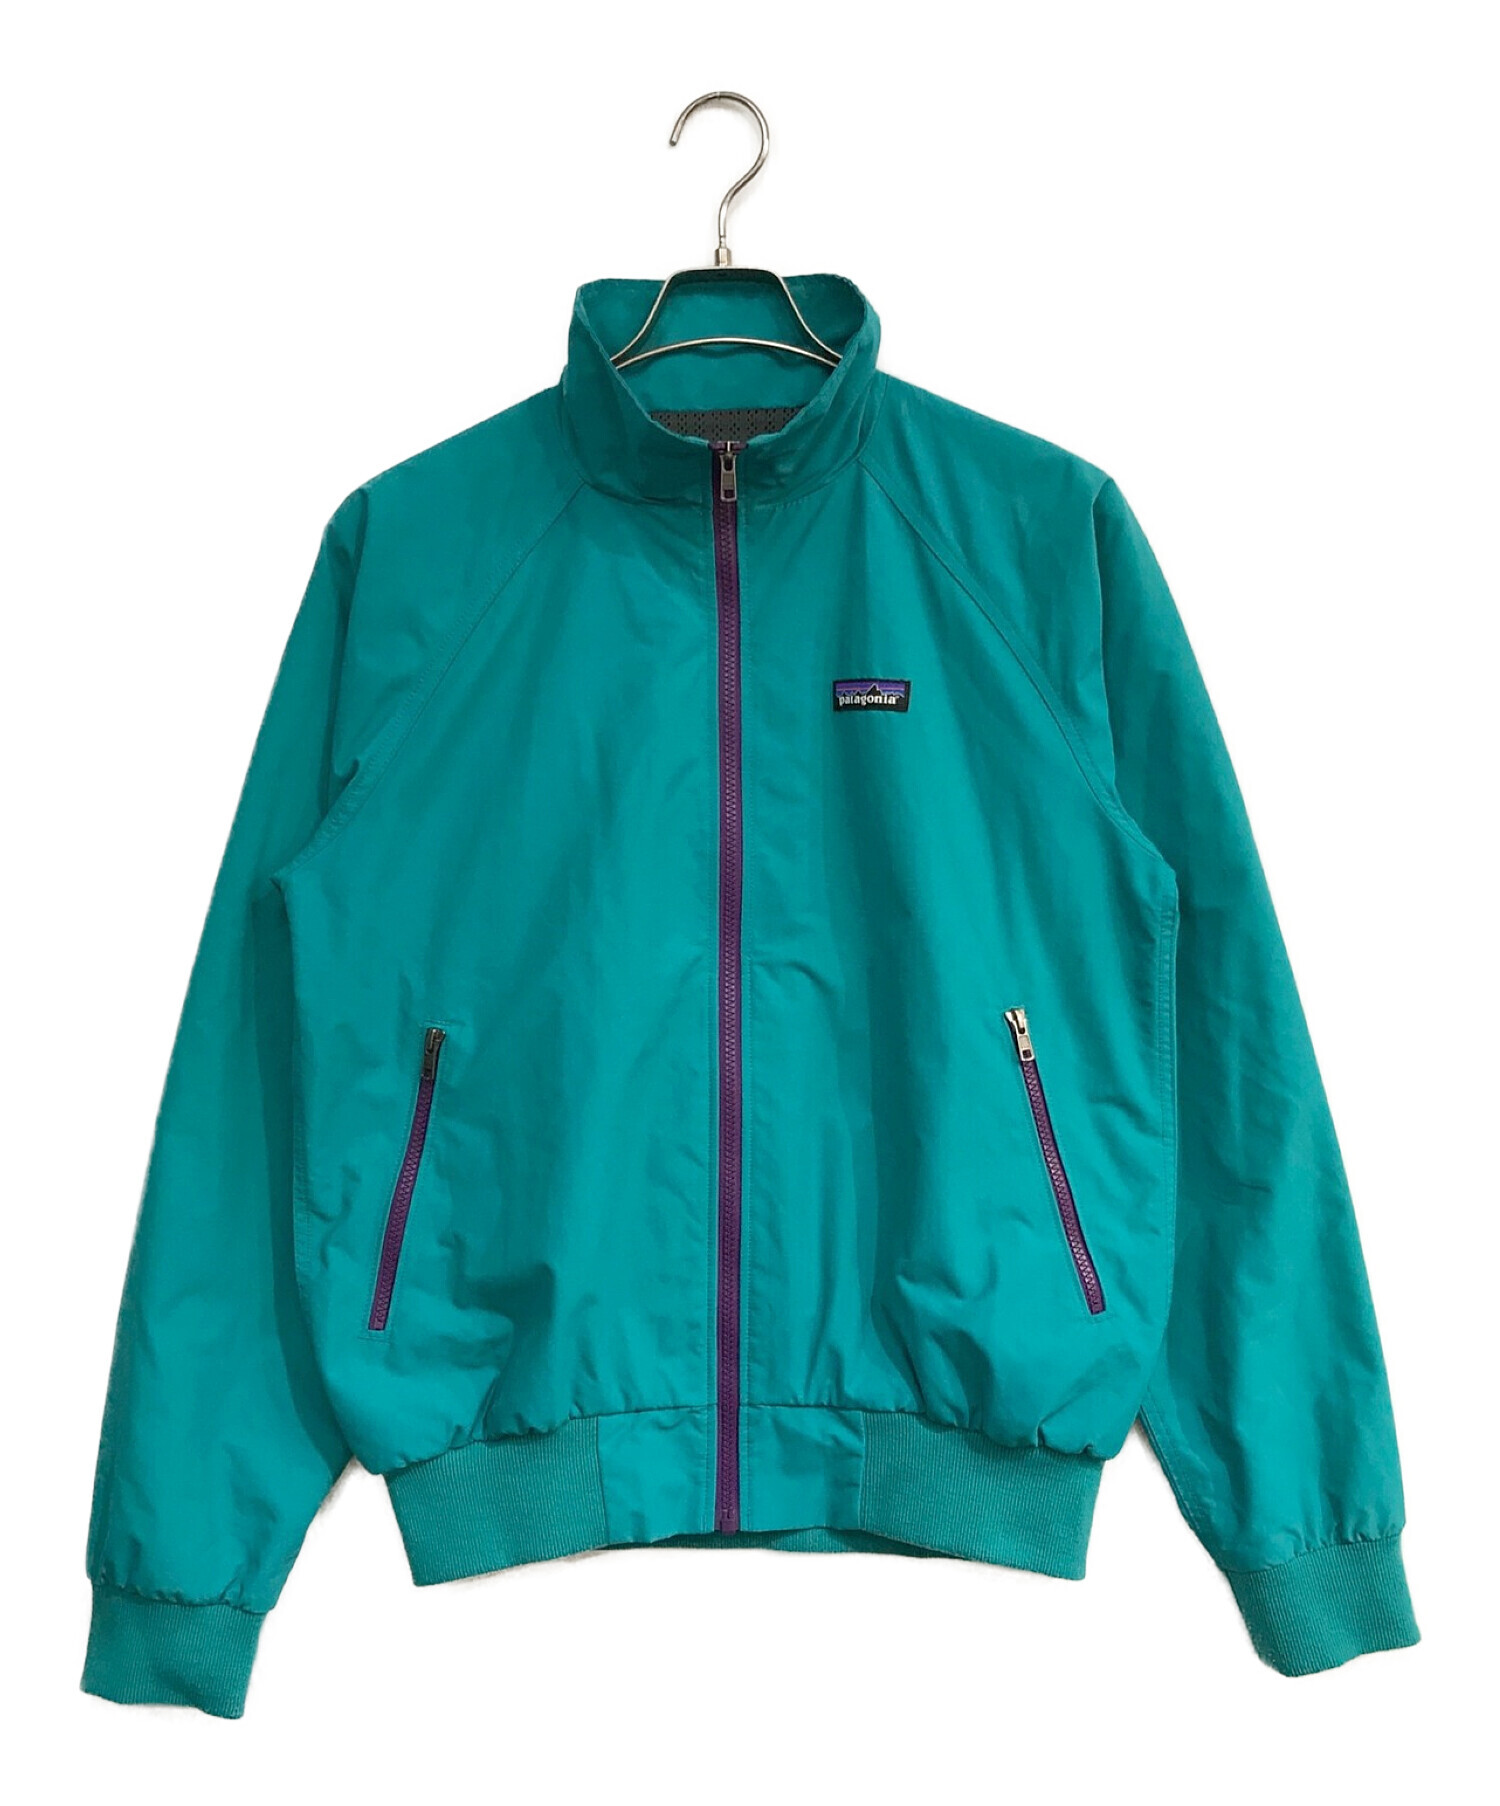 カラーレッド×ネイビー新品 S パタゴニア ナイロン ジャケット patagonia jacket